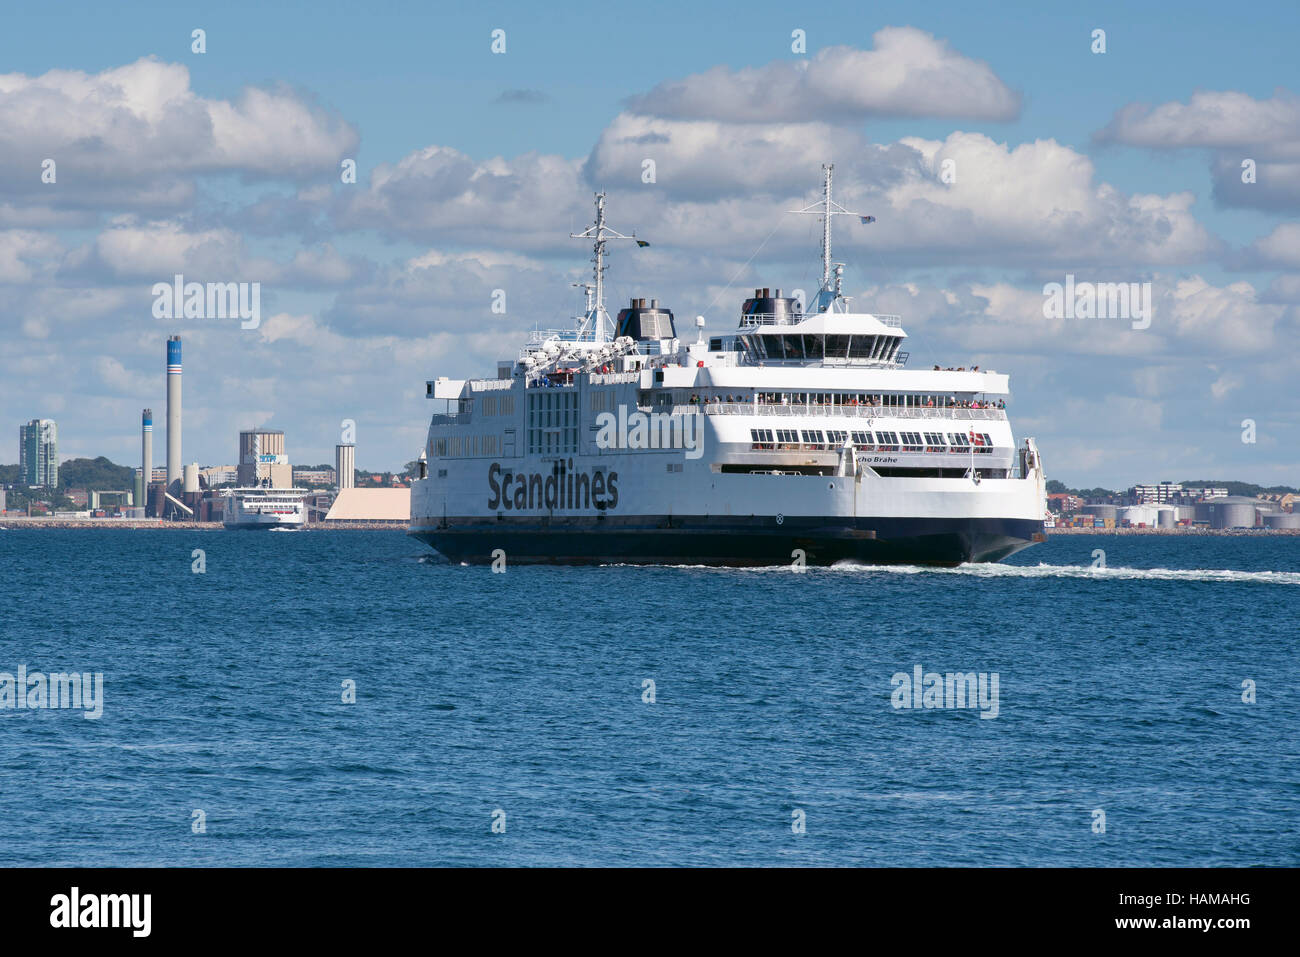 Tycho Brahe traghetto della compagnia di navigazione Scandlines, sul percorso Elsinore-Helsingborg tra la Danimarca e la Svezia attraverso l'Oresund Foto Stock